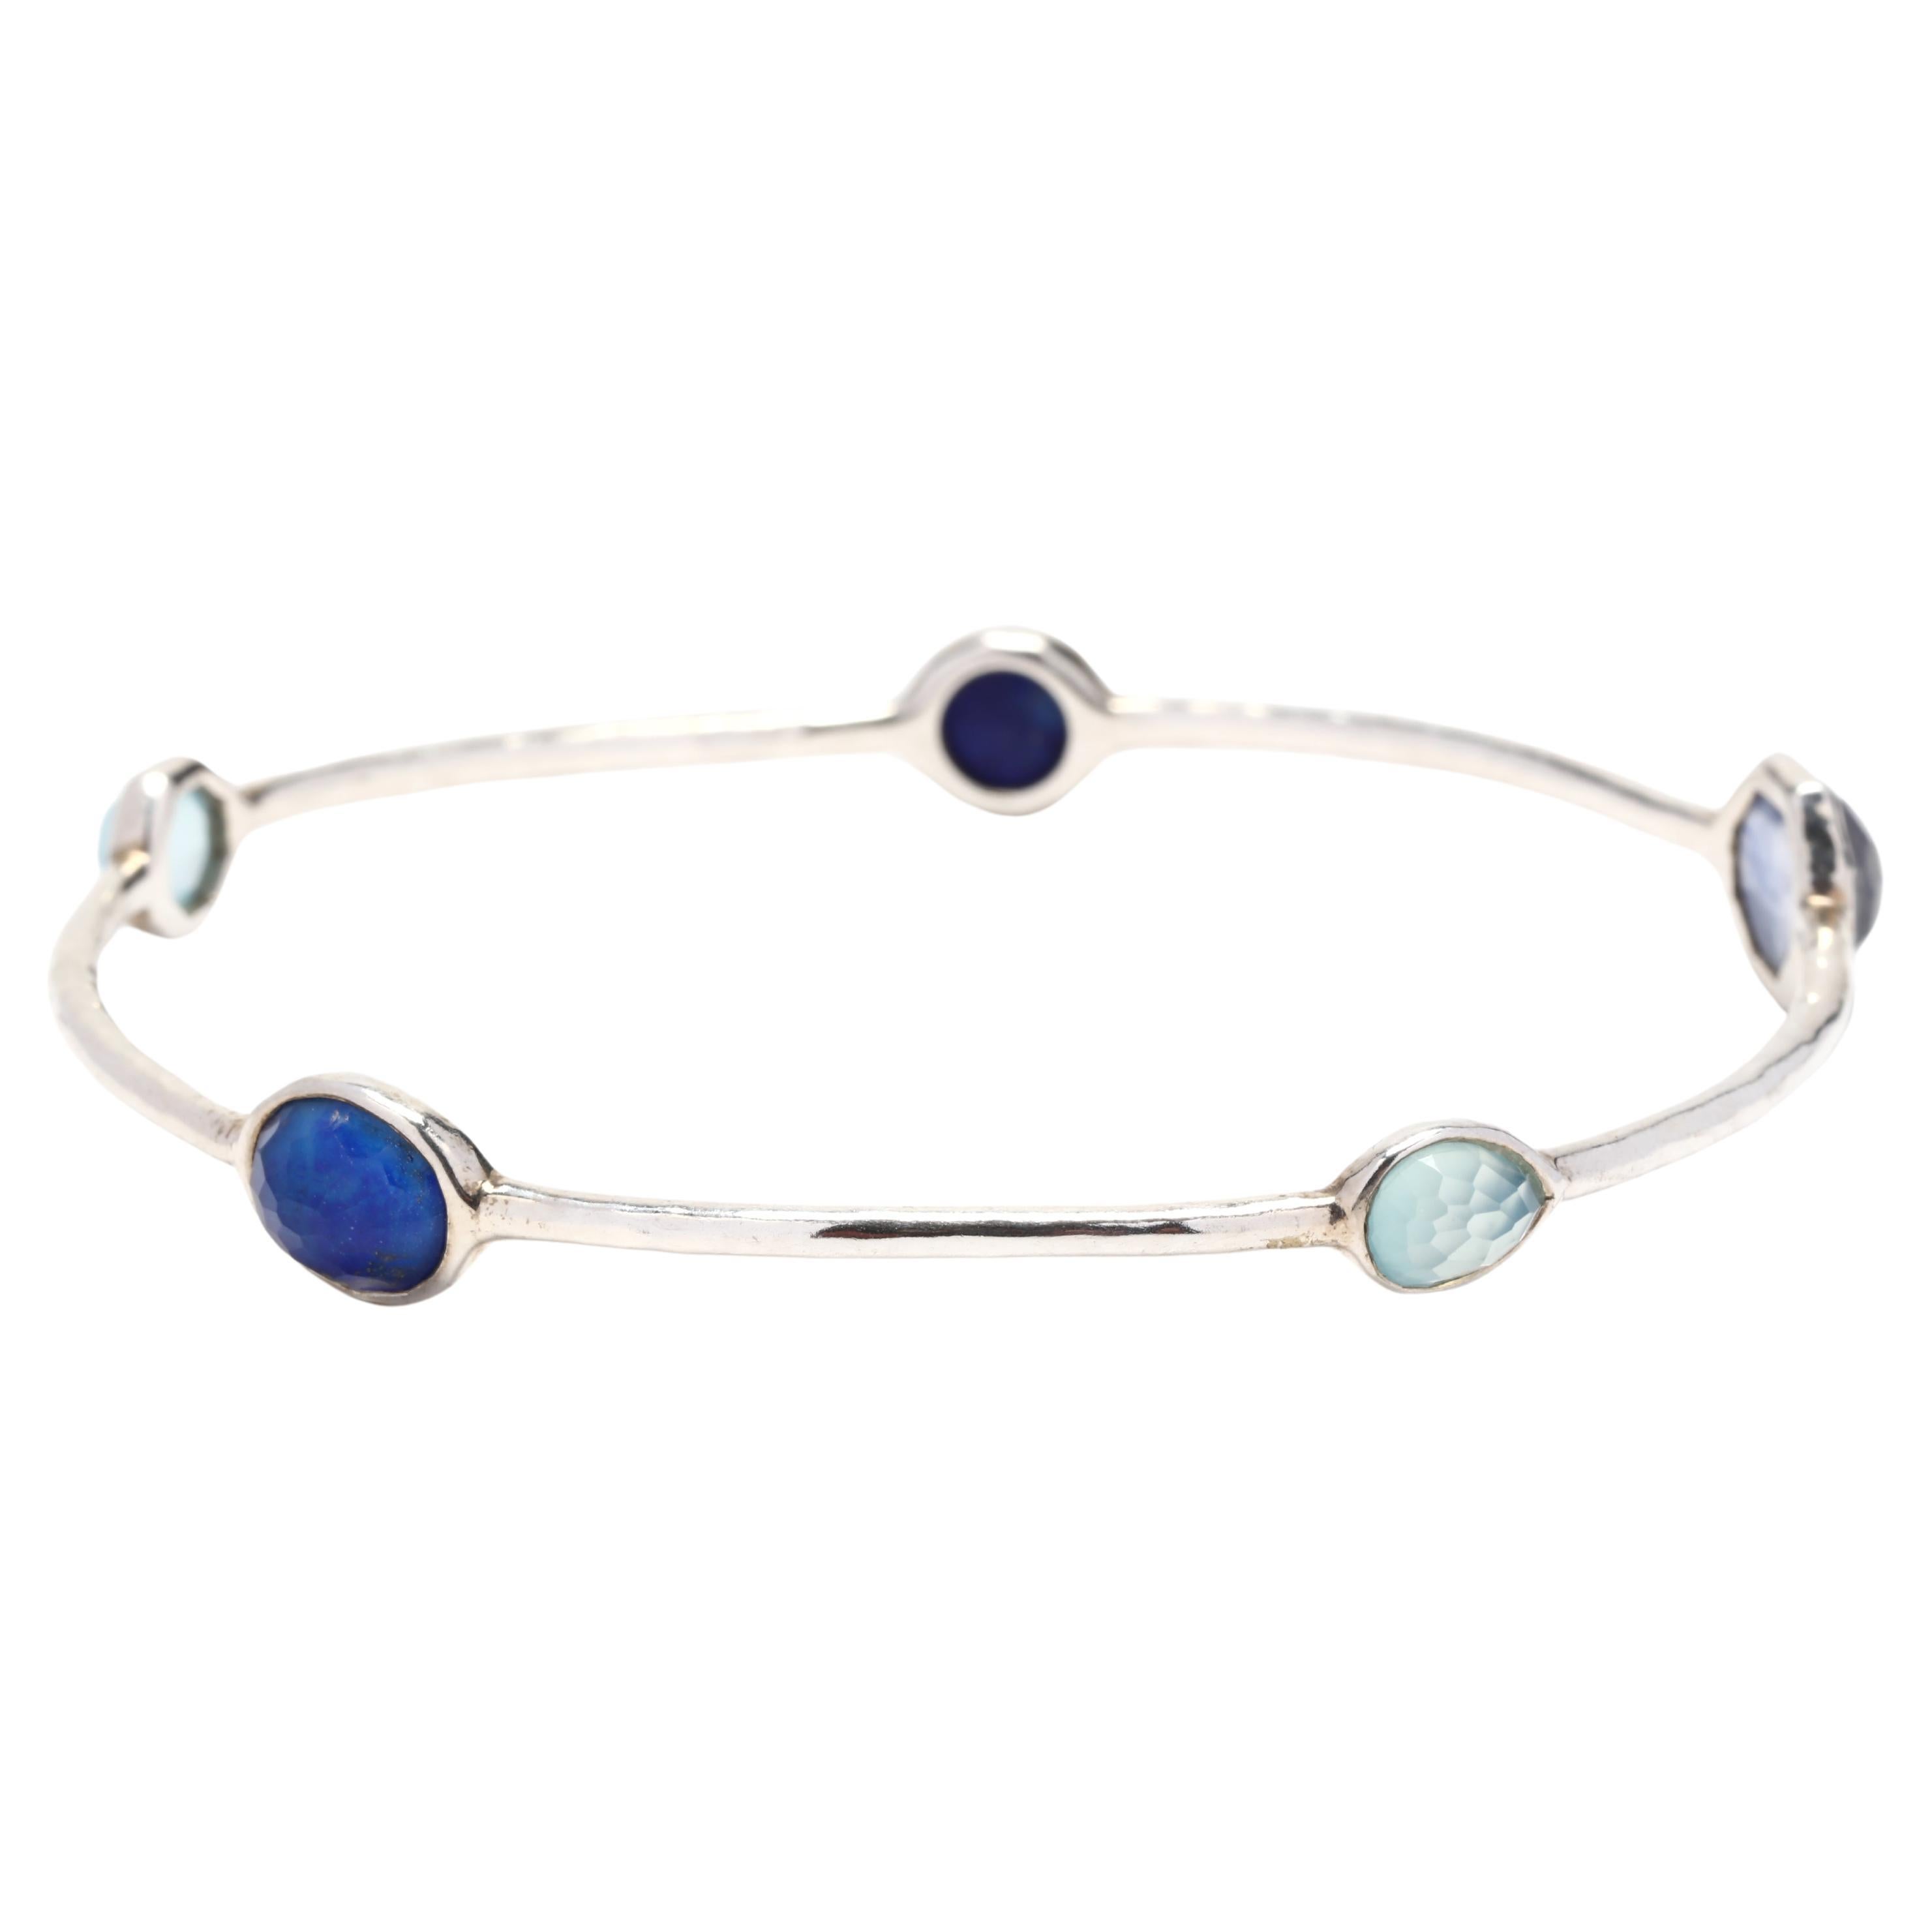 Ippolita Rock Candy Blue 5 Stone Bangle Bracelet, Sterling Silver, Length 8 Inch